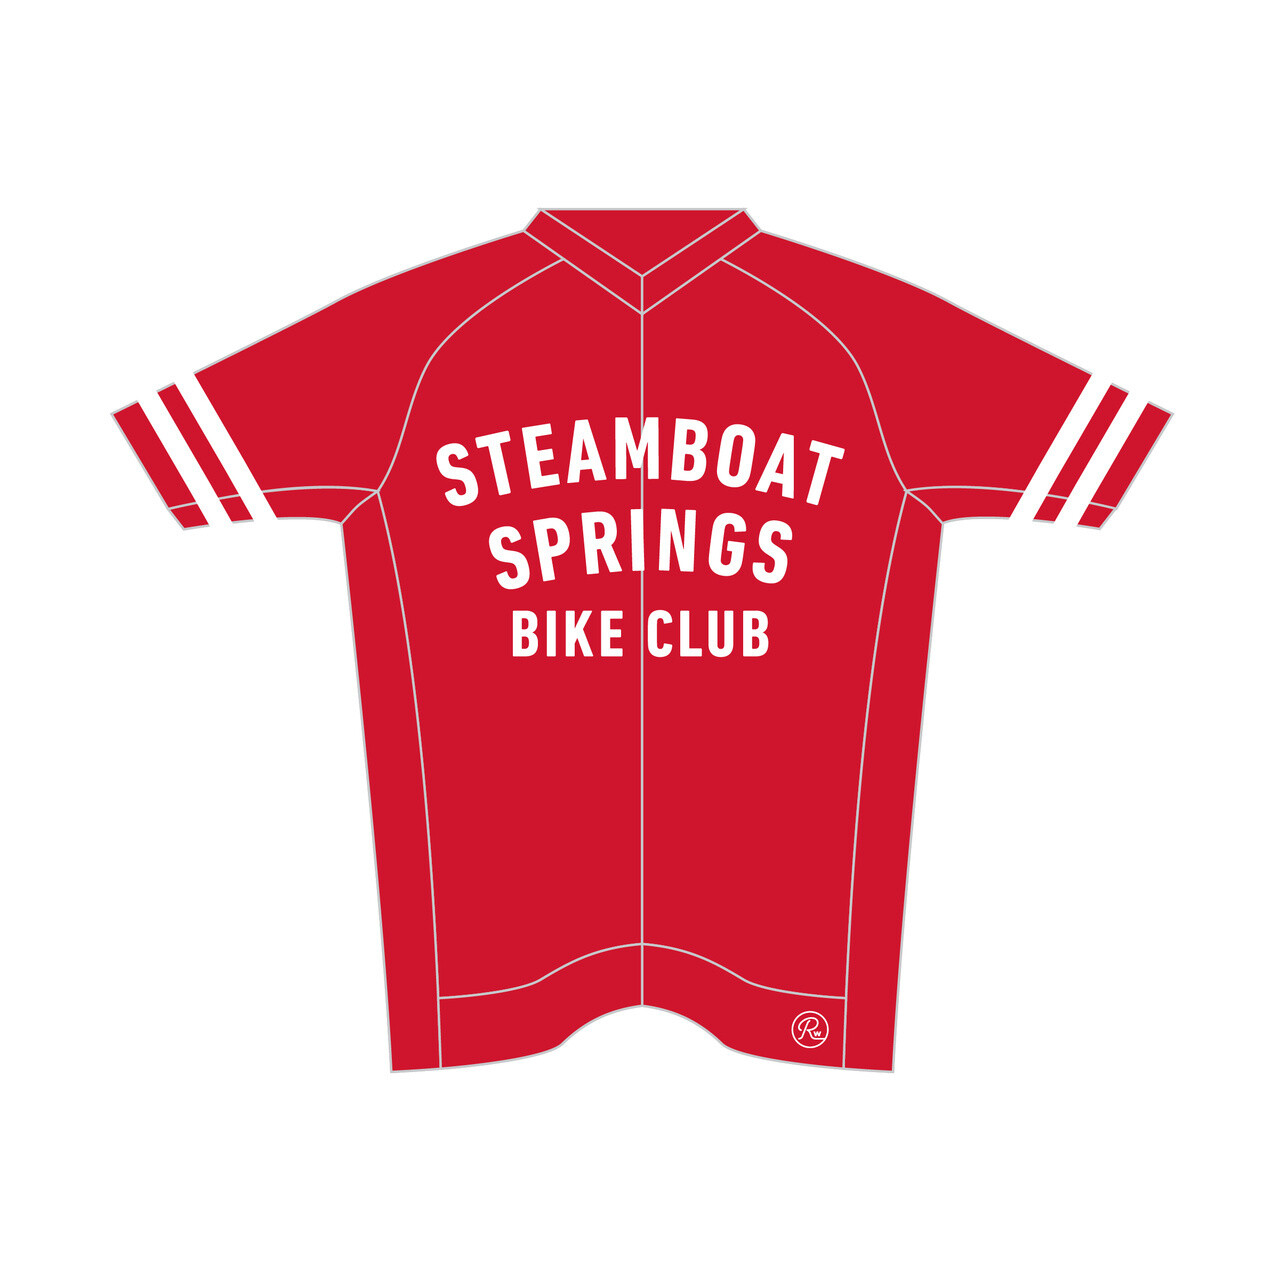 Steamboat Bike Club Jersey by Ride Workshop